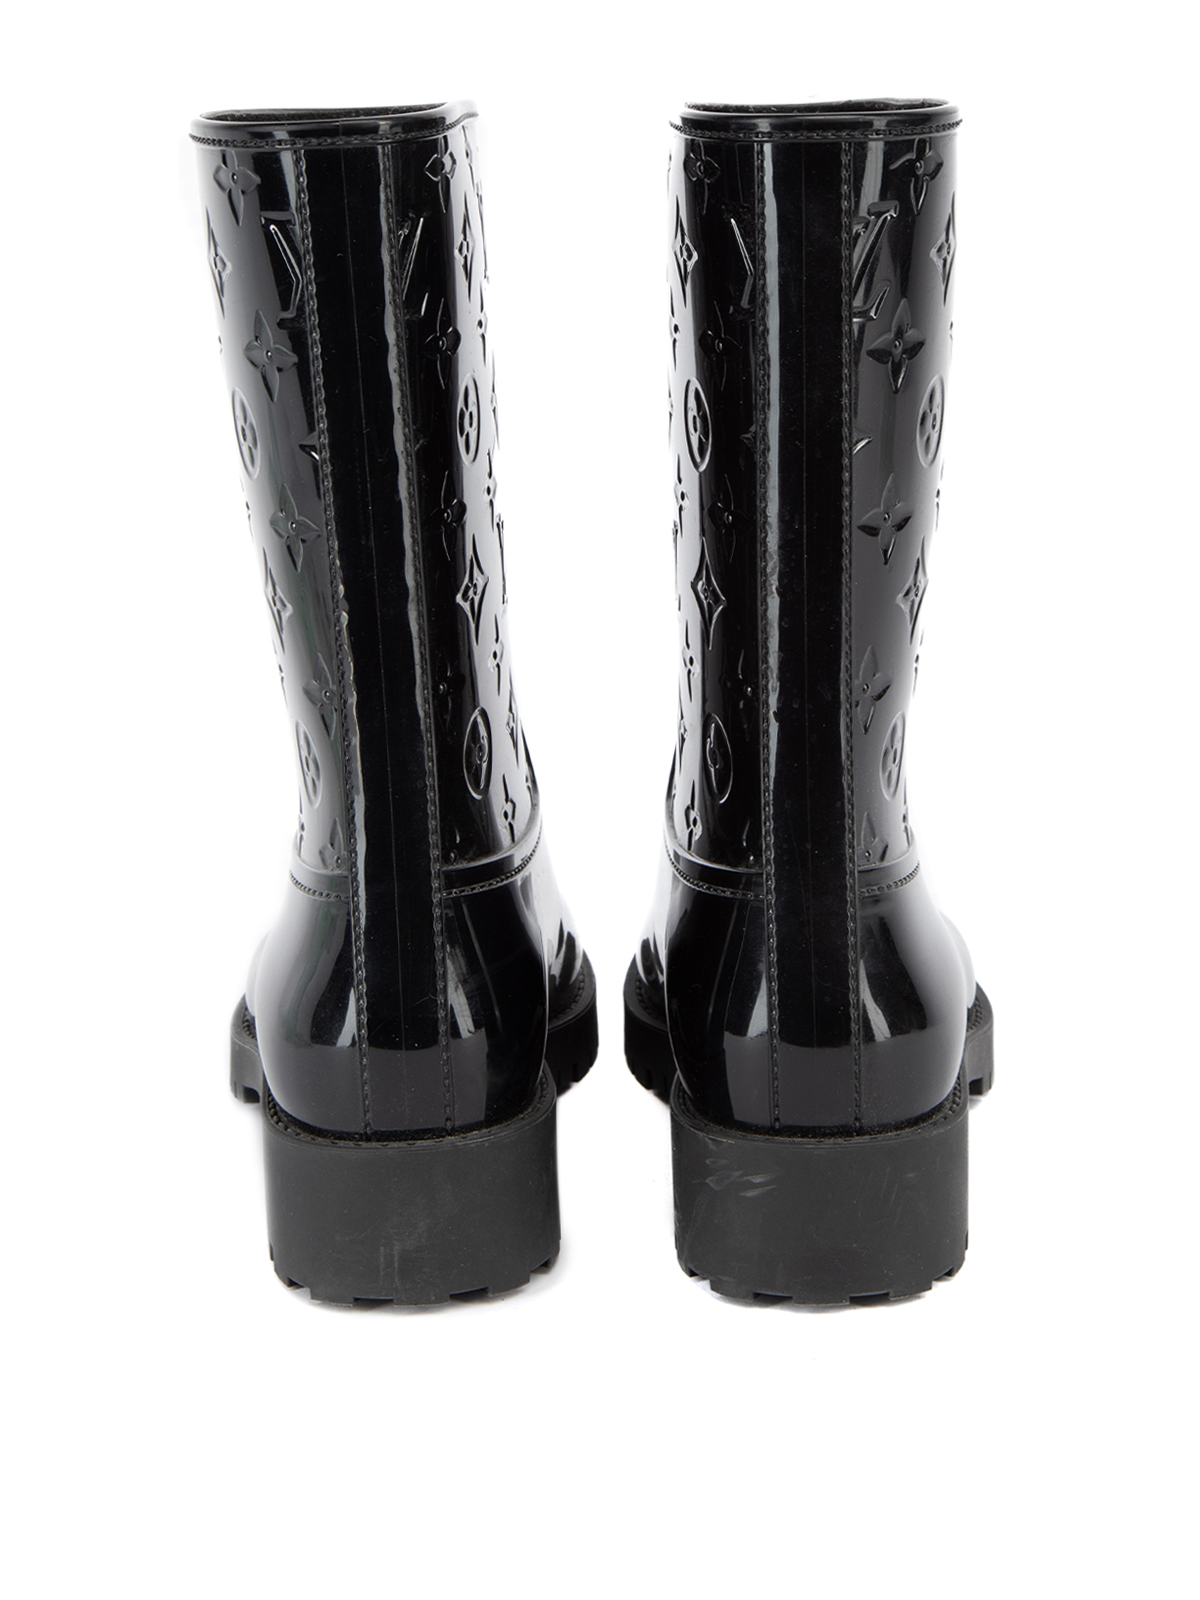 Drops wellington boots Louis Vuitton Black size 38 EU in Rubber